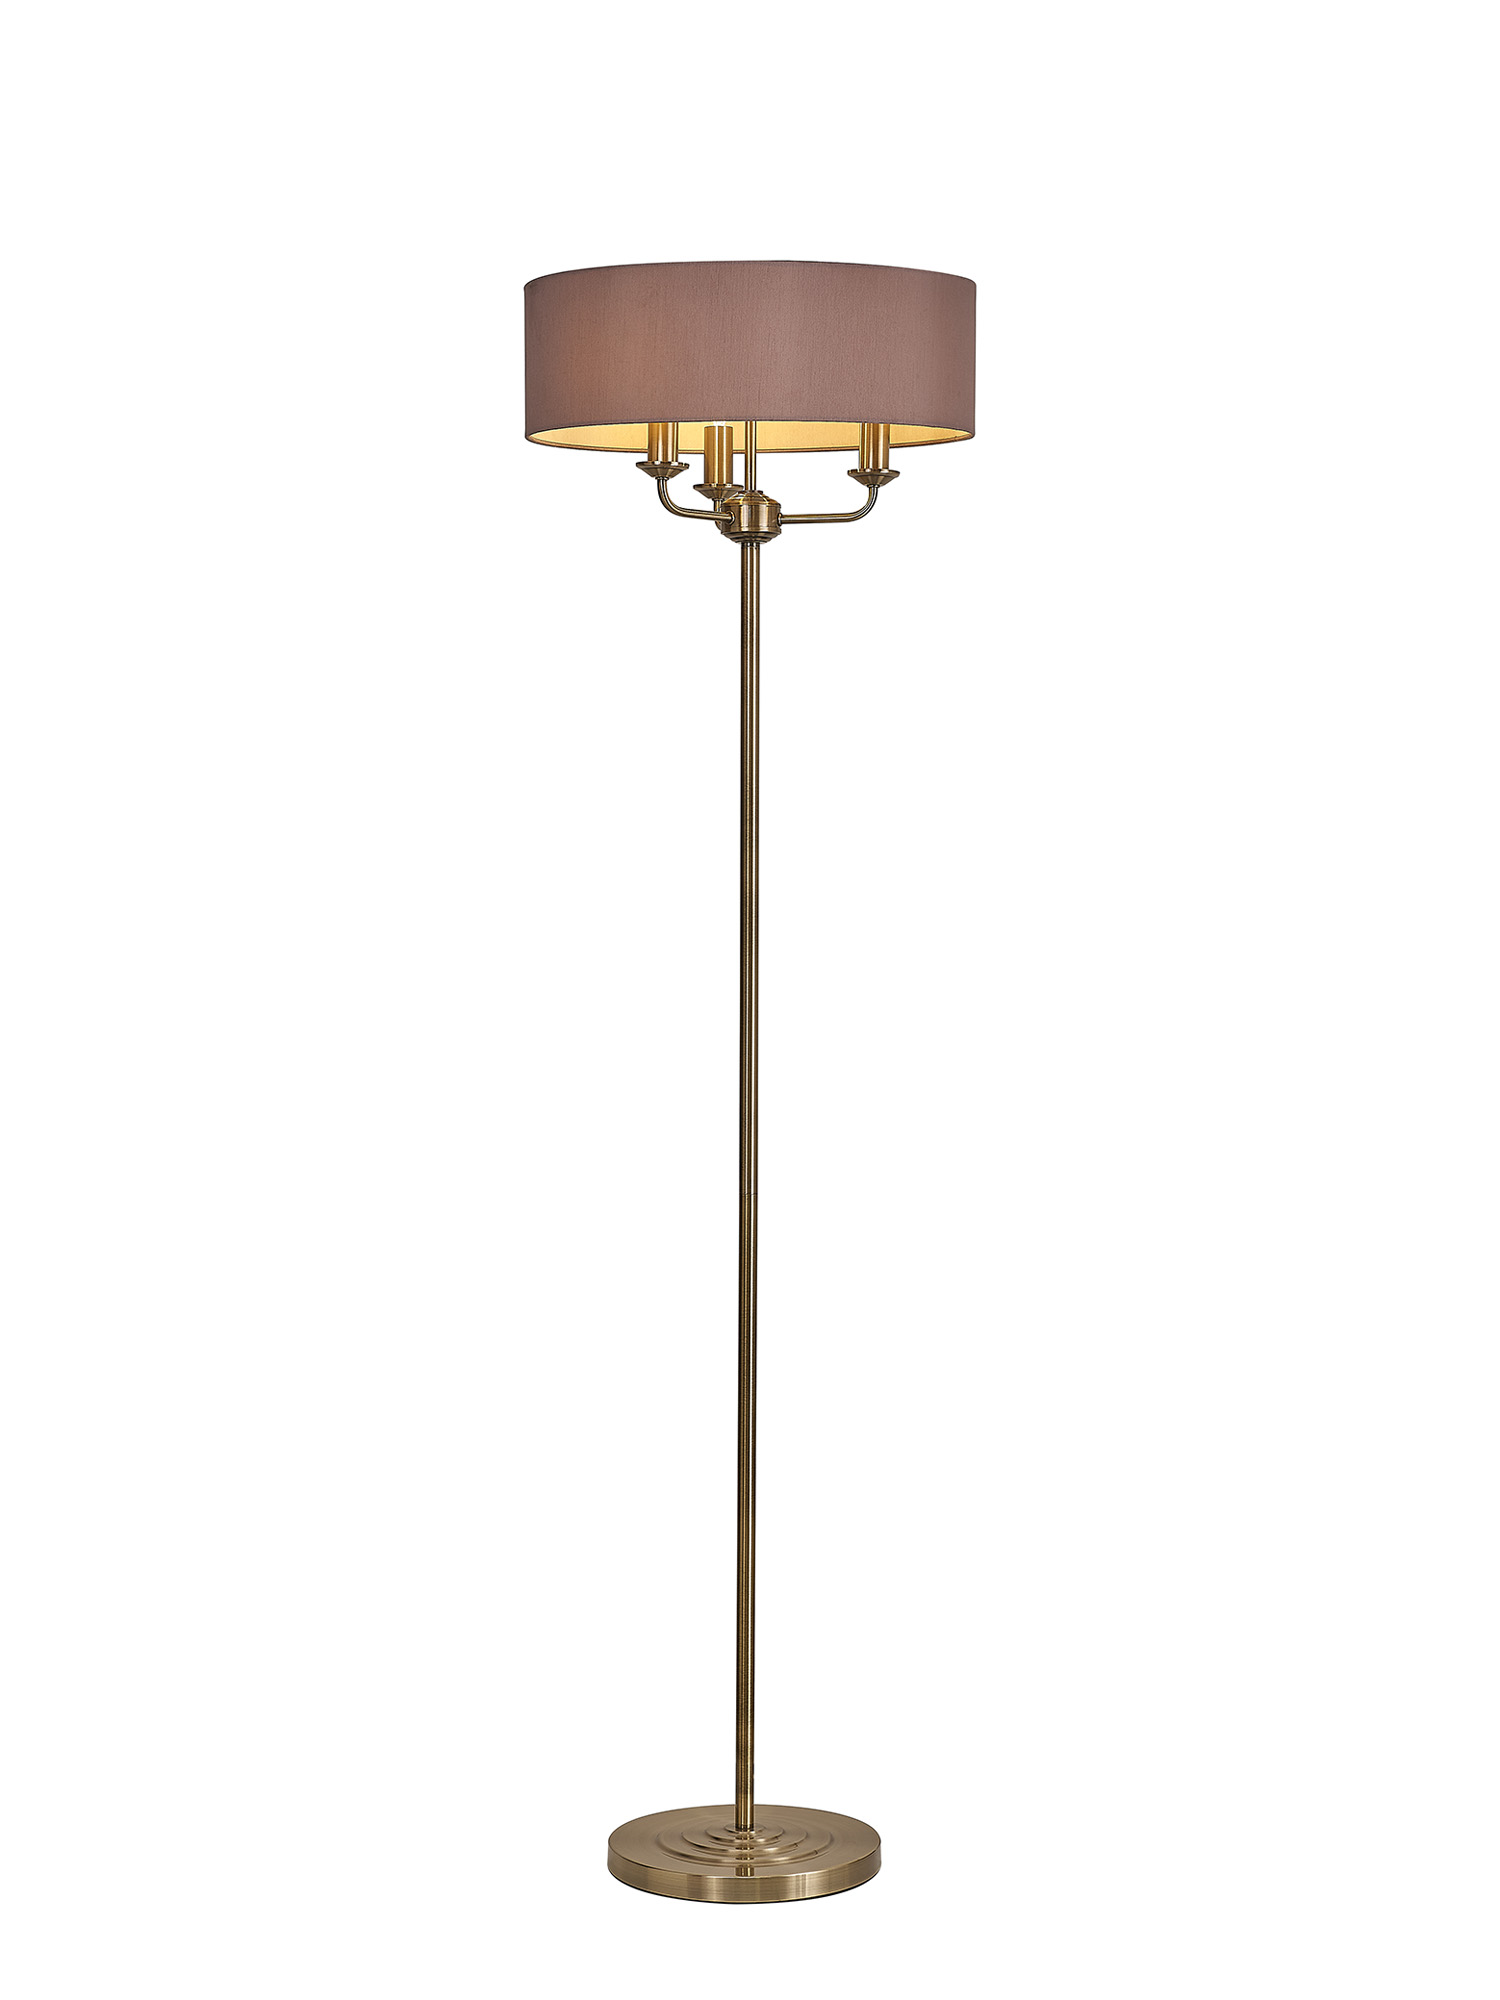 DK0906  Banyan 45cm 3 Light Floor Lamp Antique Brass; Taupe